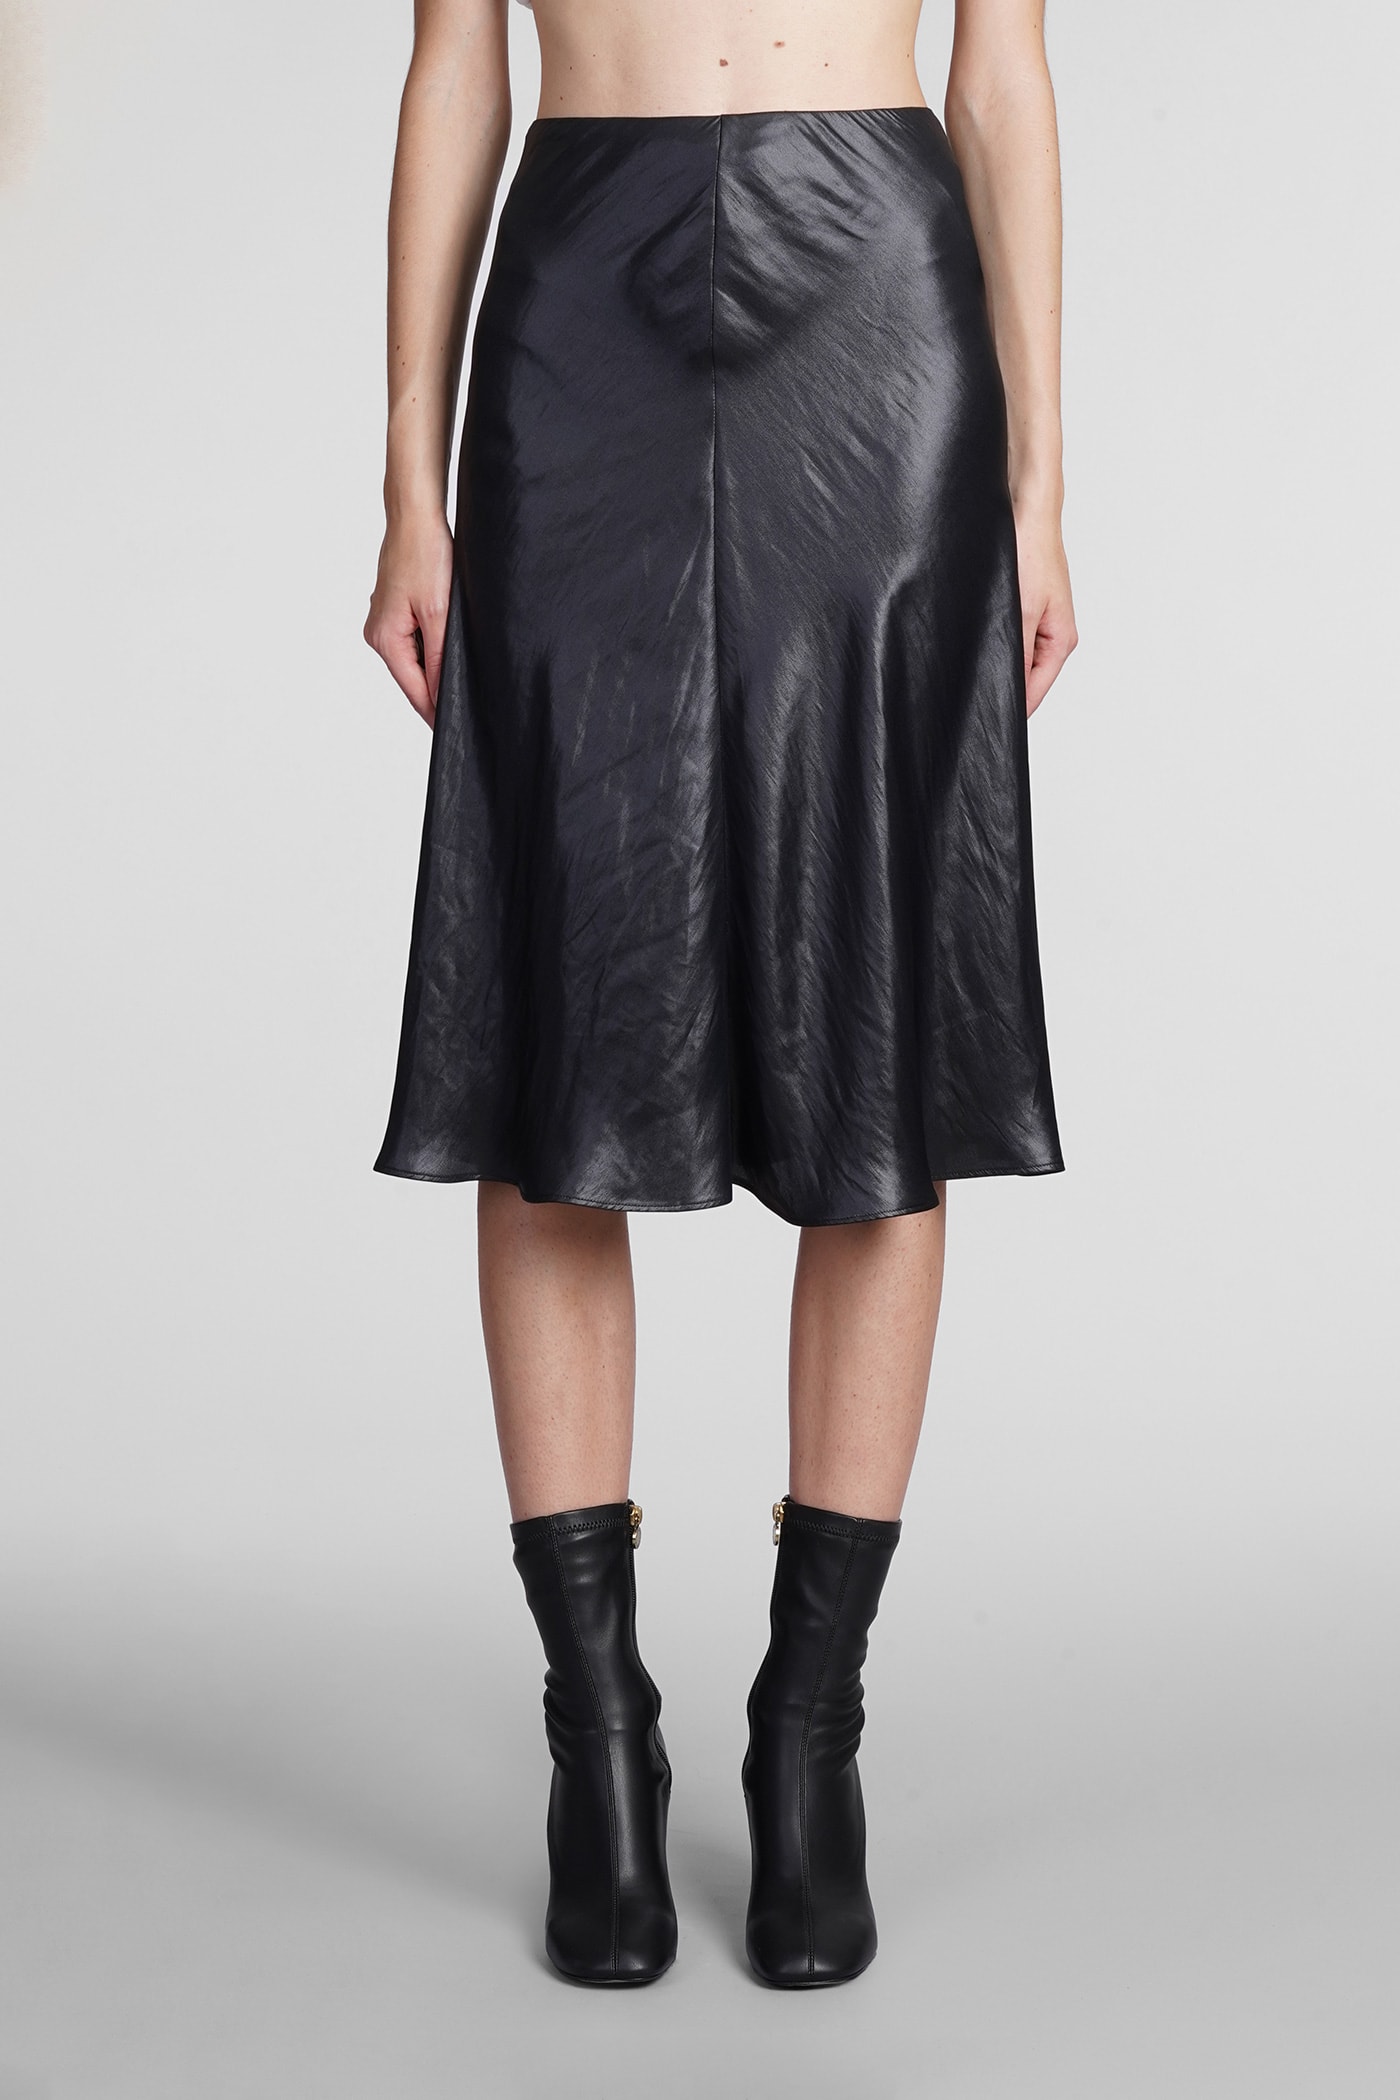 Stella McCartney Skirt In Black Polyester